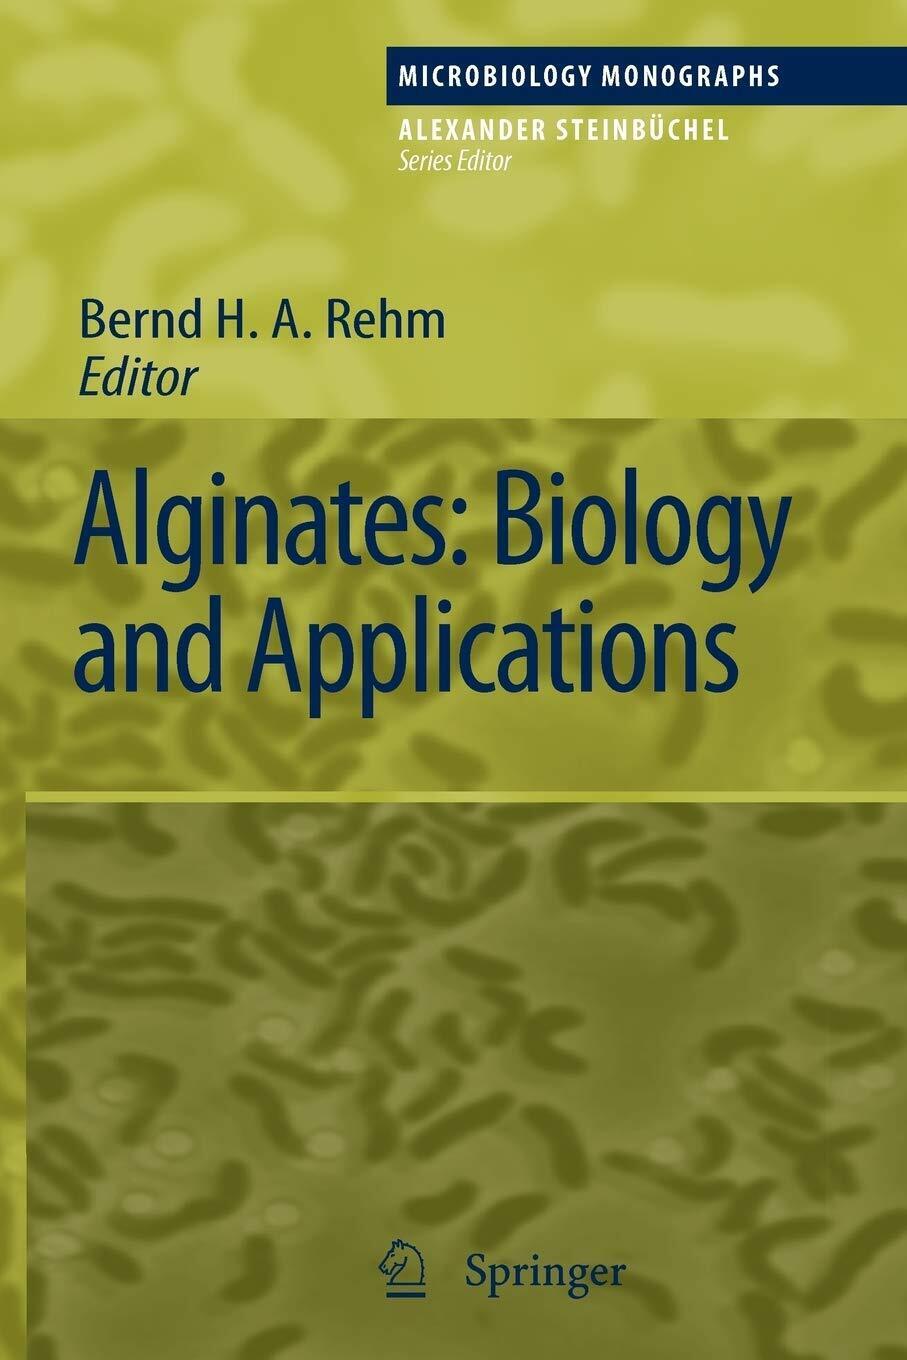 Alginates: Biology and Applications - Bernd H. A. Rehm - Springer, 2010